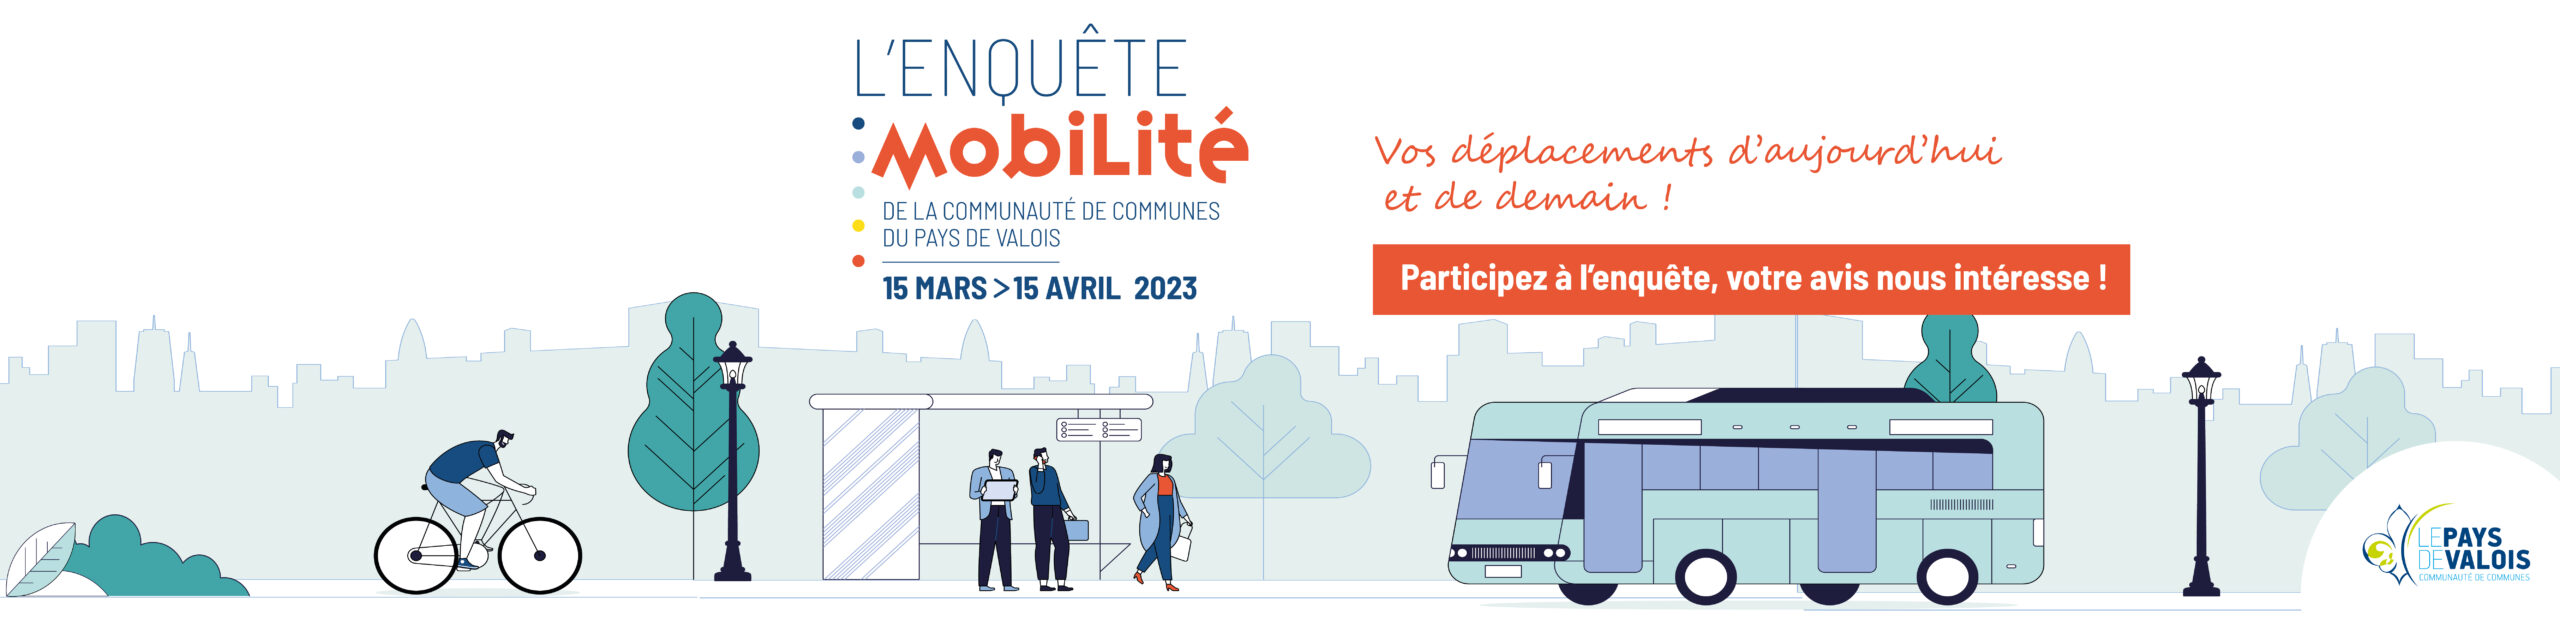 slide _enquete mobilité 2023_Plan de travail 1